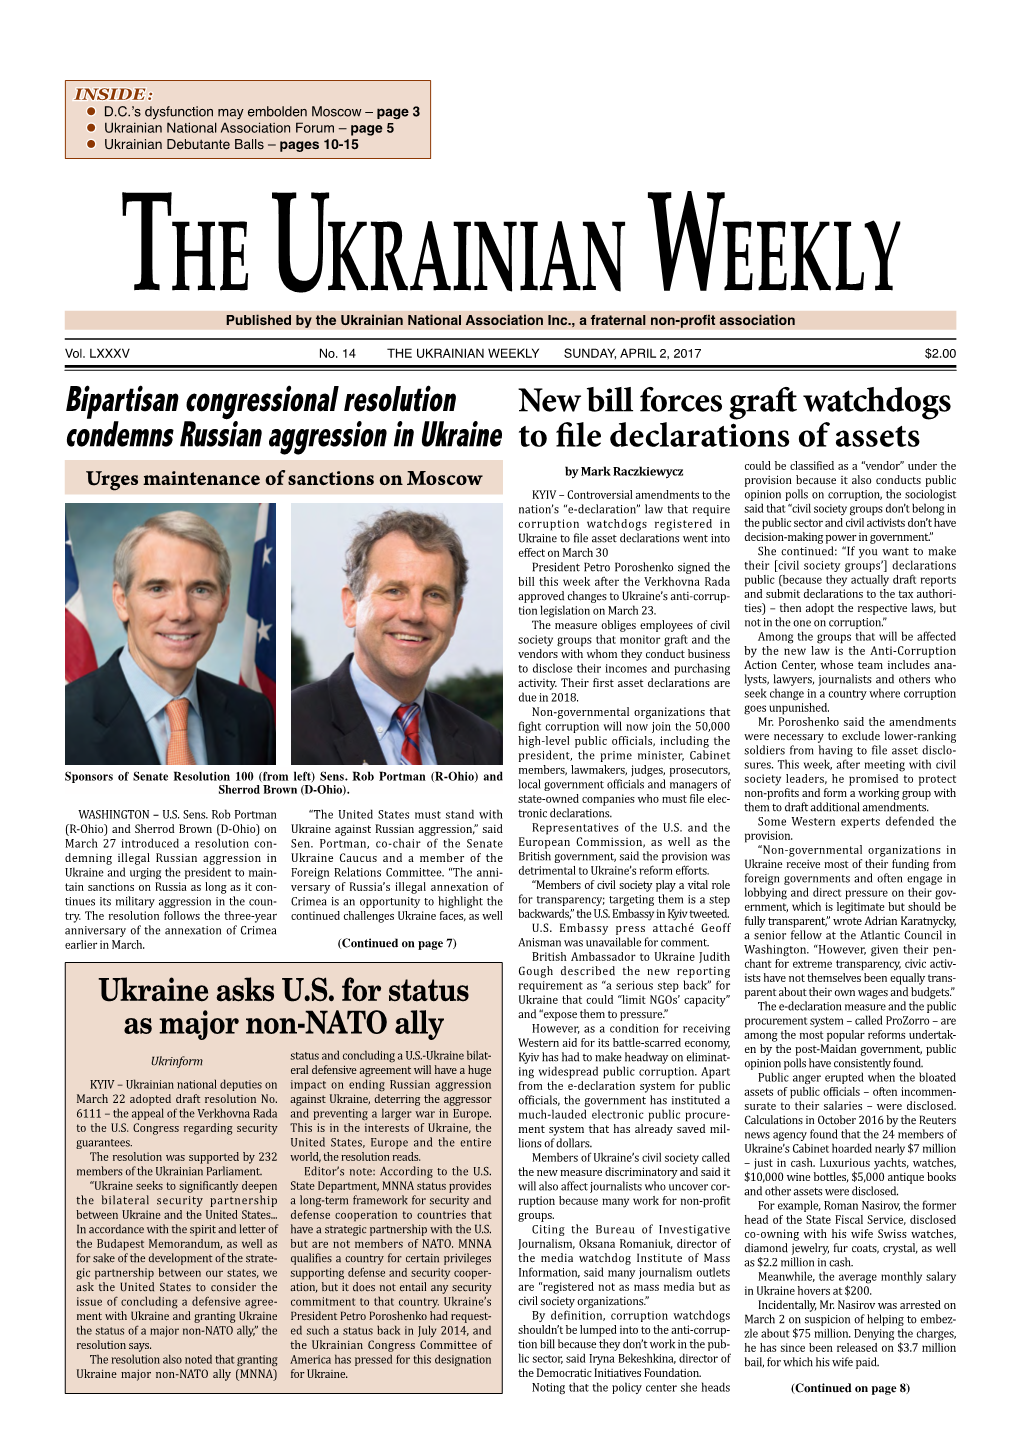 The Ukrainian Weekly, 2017